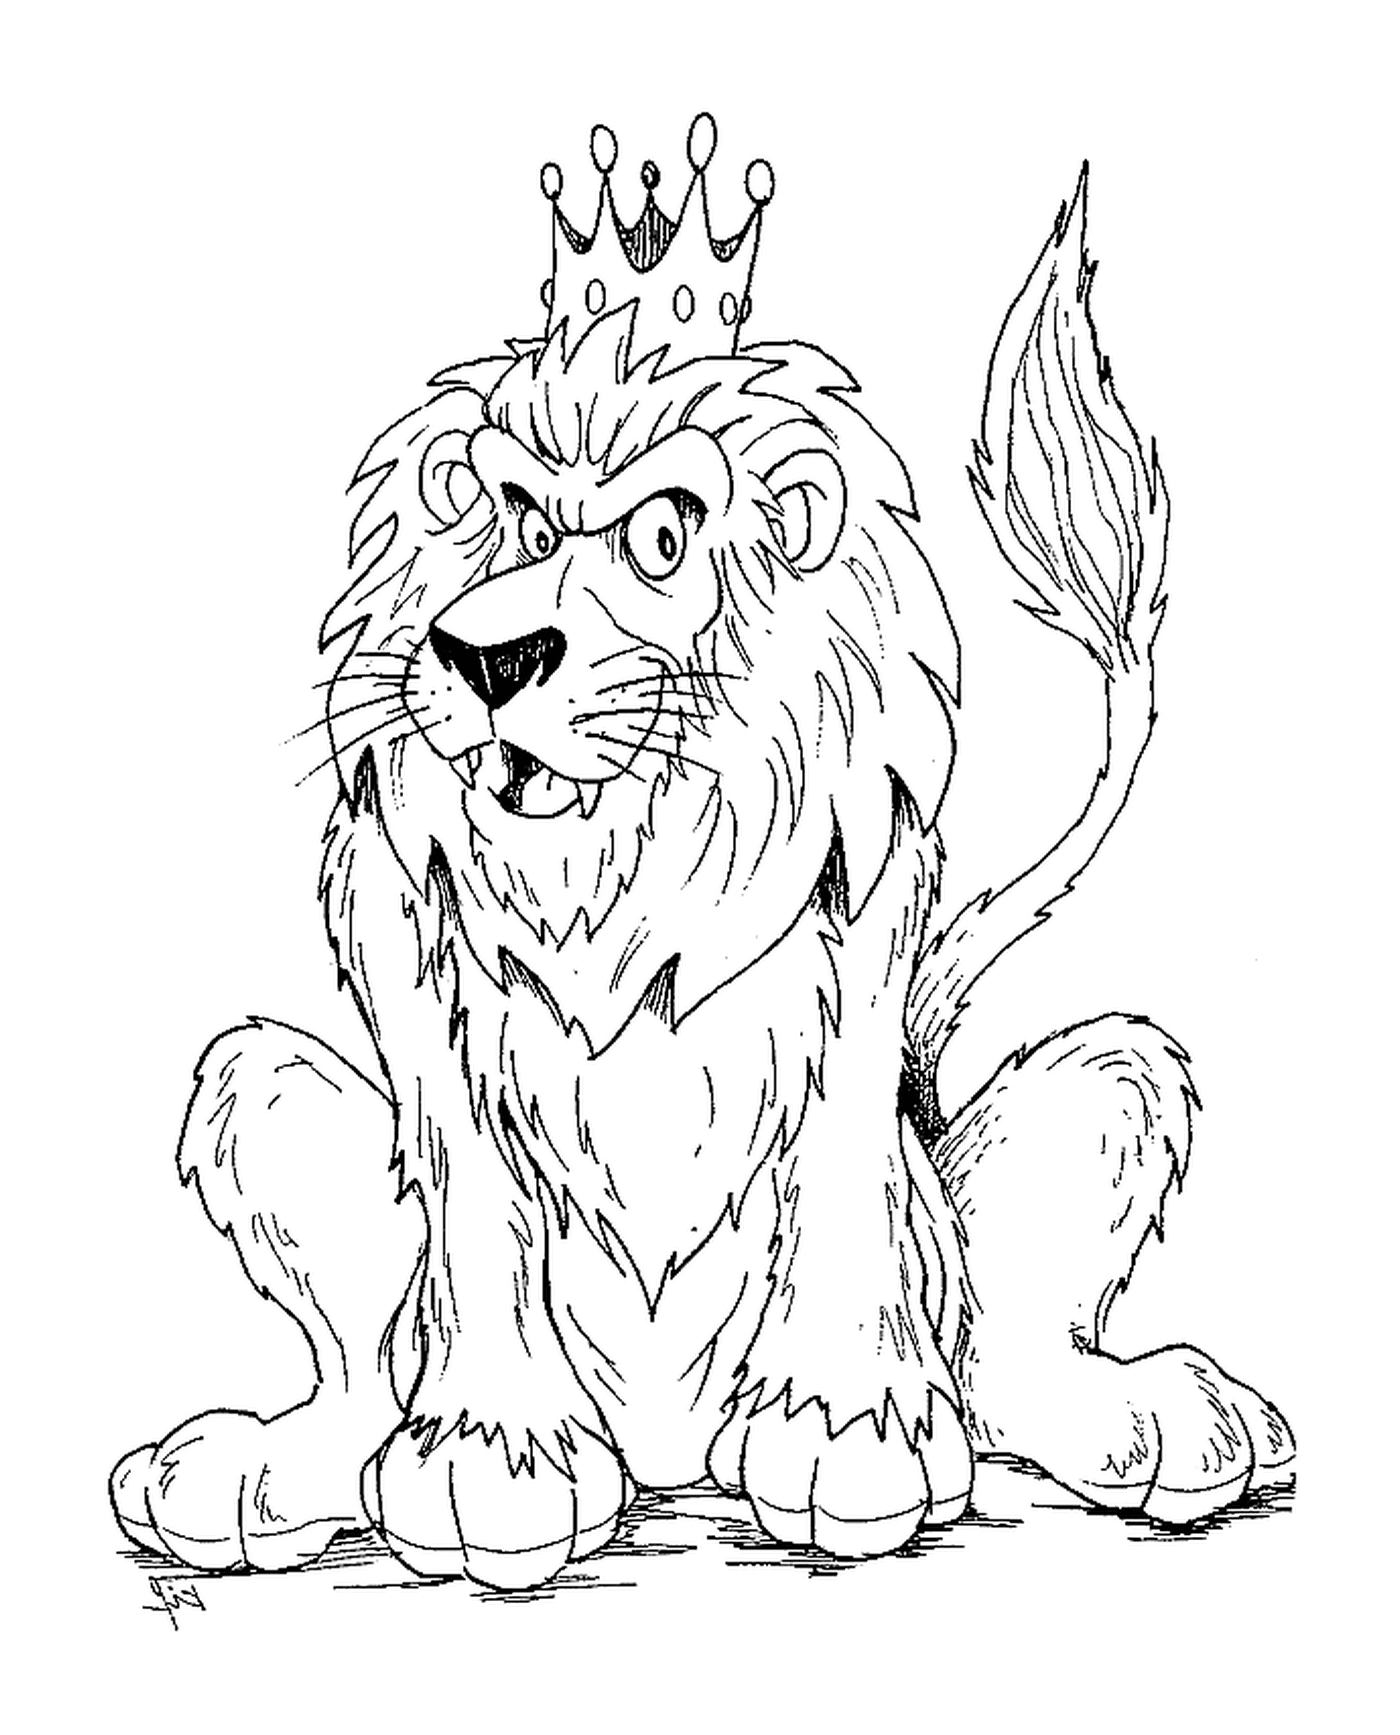   Lion avec couronne royale 